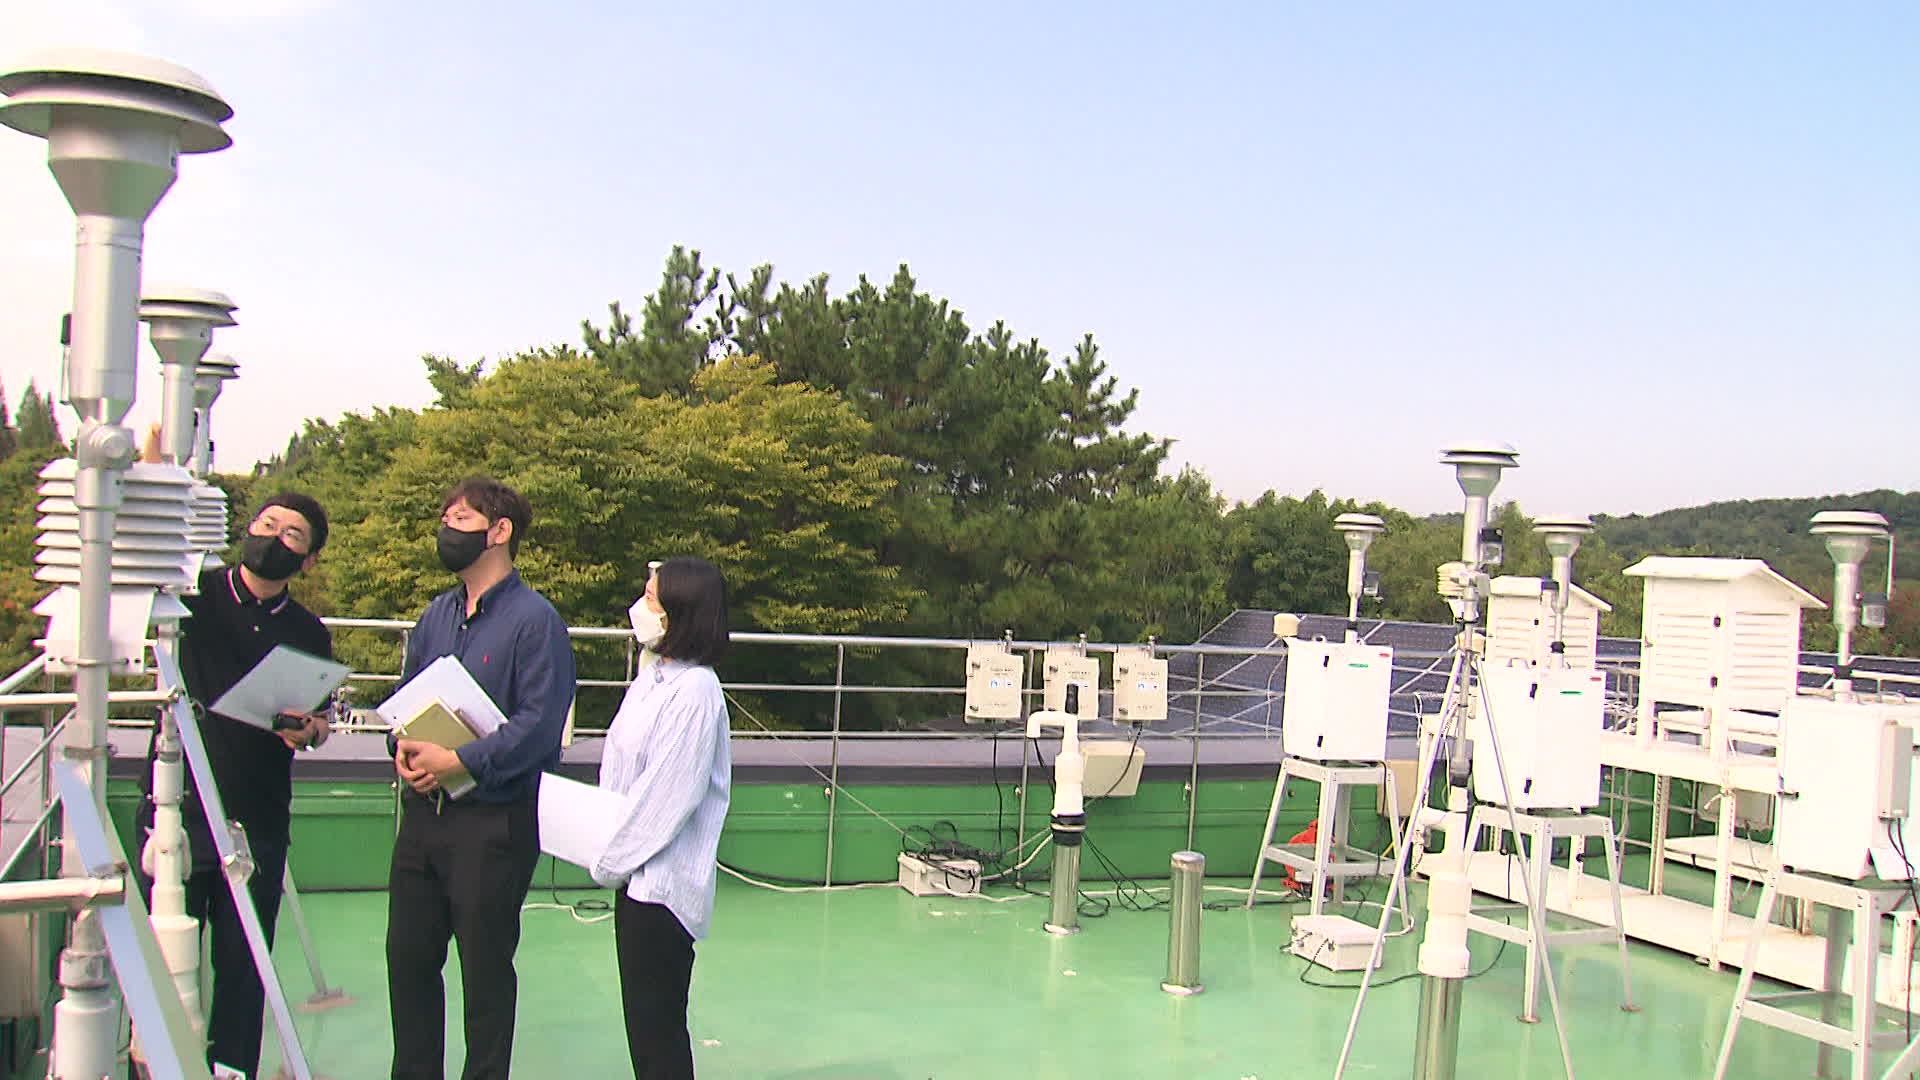 미세먼지 간이측정기 성능인증시설 옥상에 설치된 시험 장비.